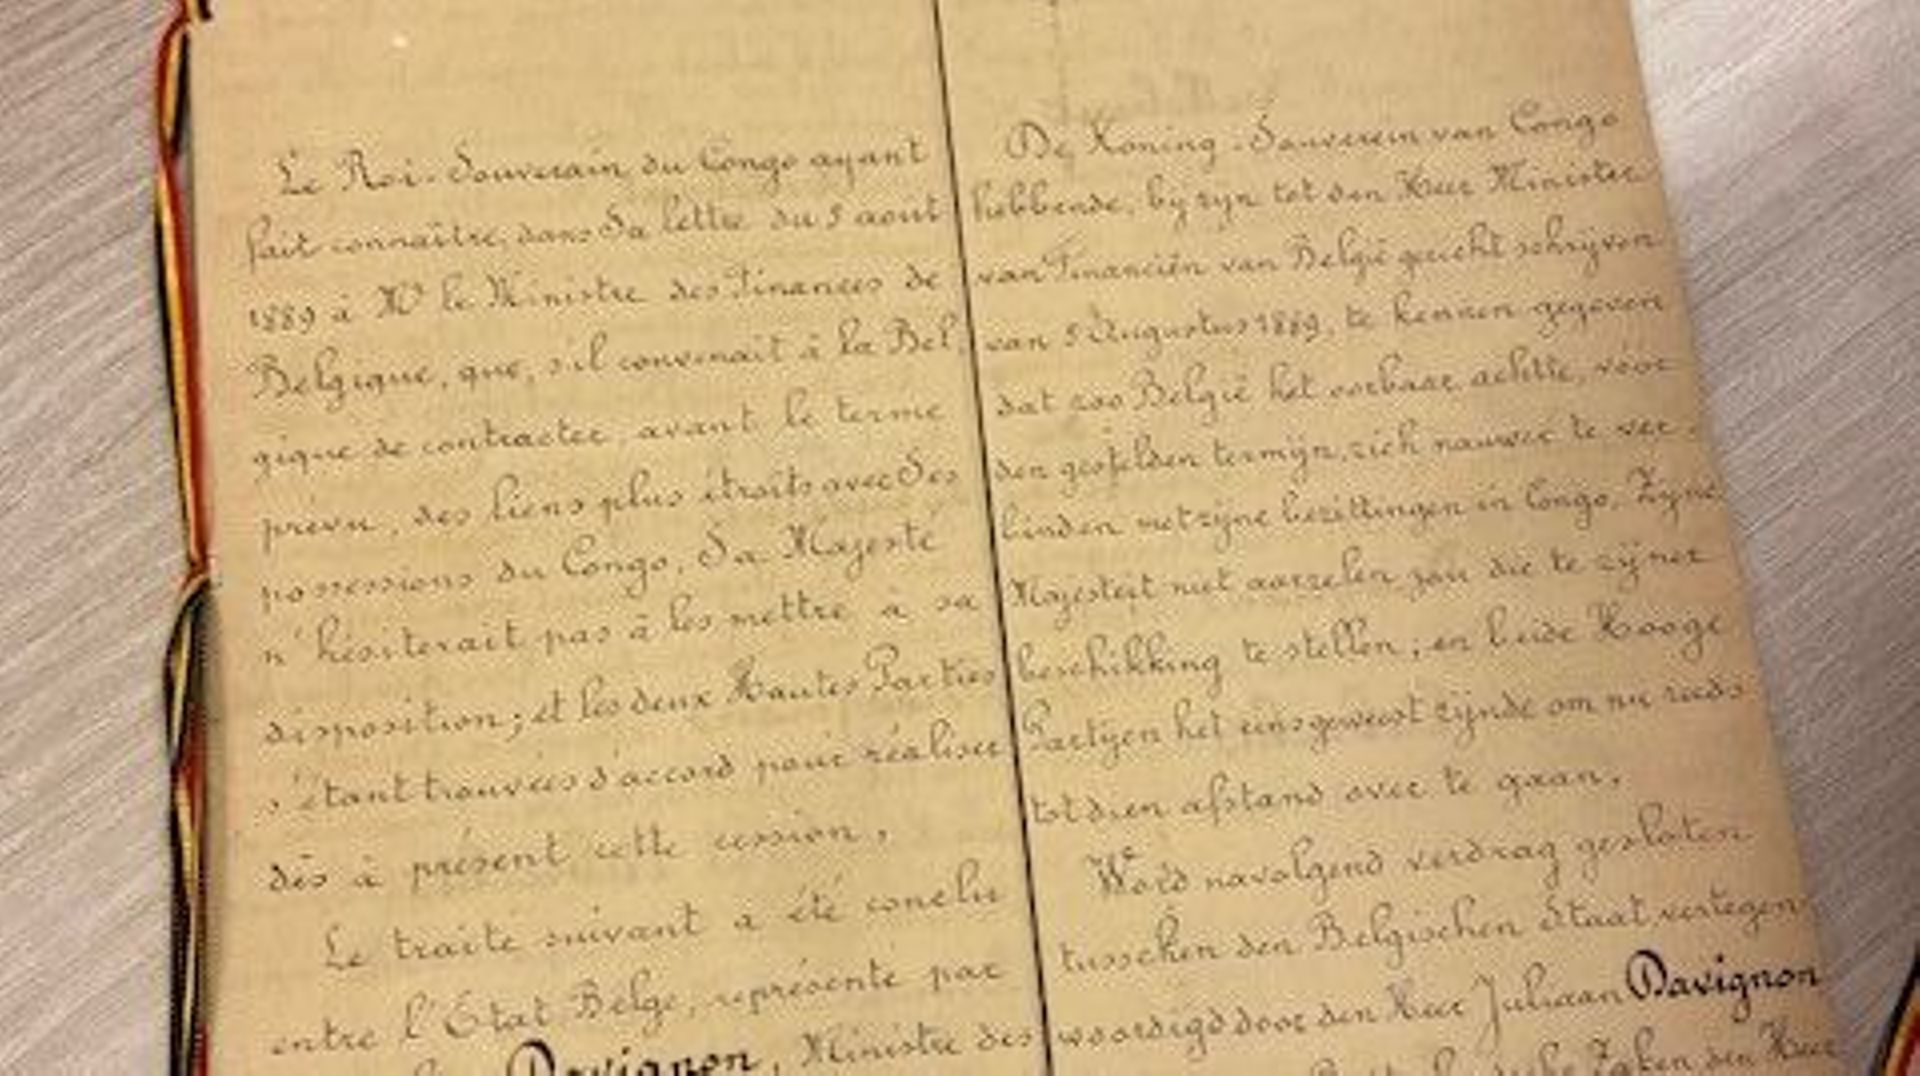 Traité de cession du Congo à la Belgique (1907)